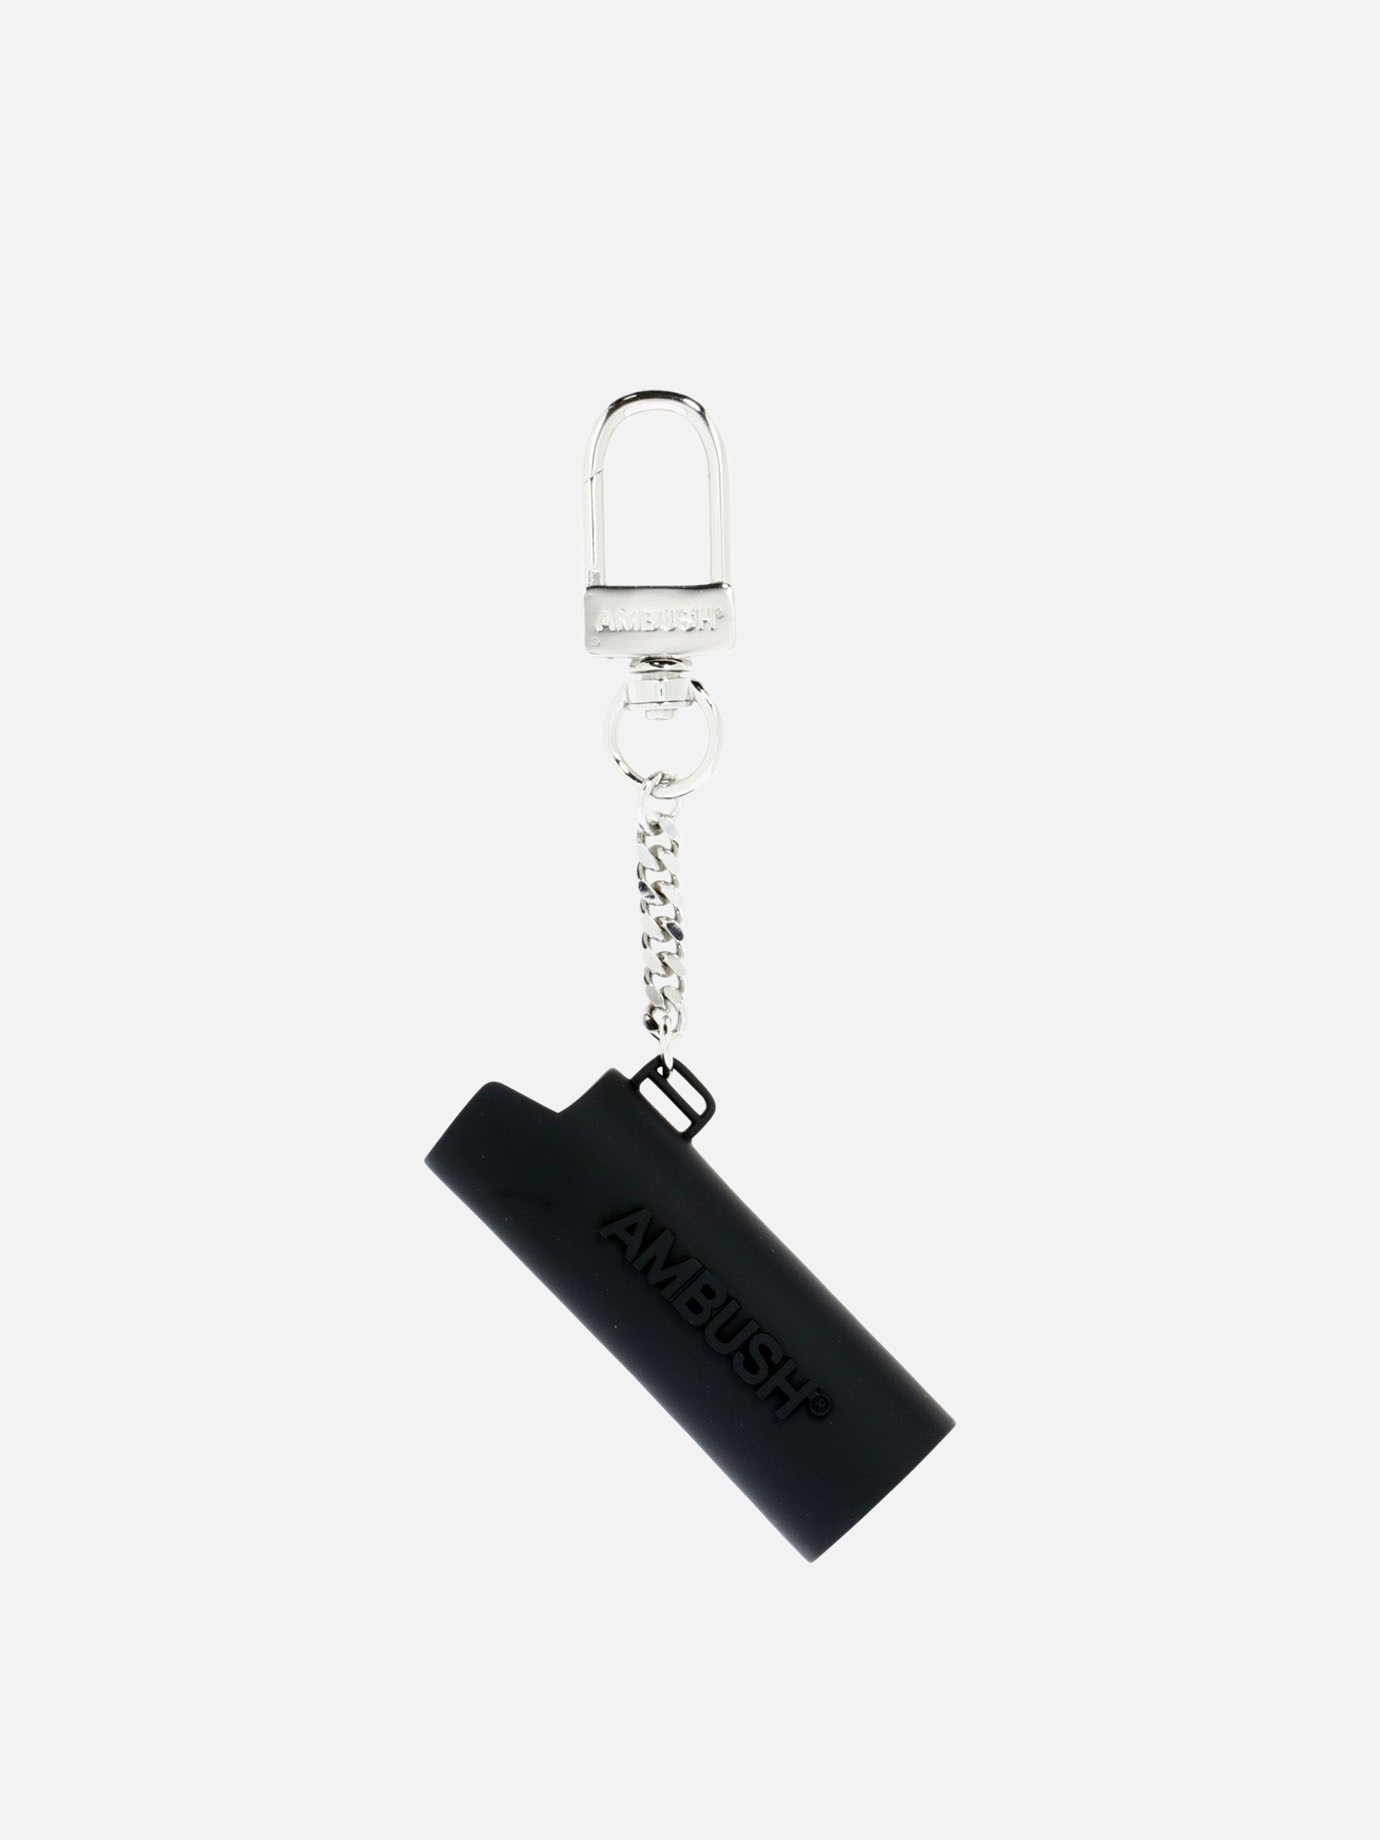 Lighter case keychain